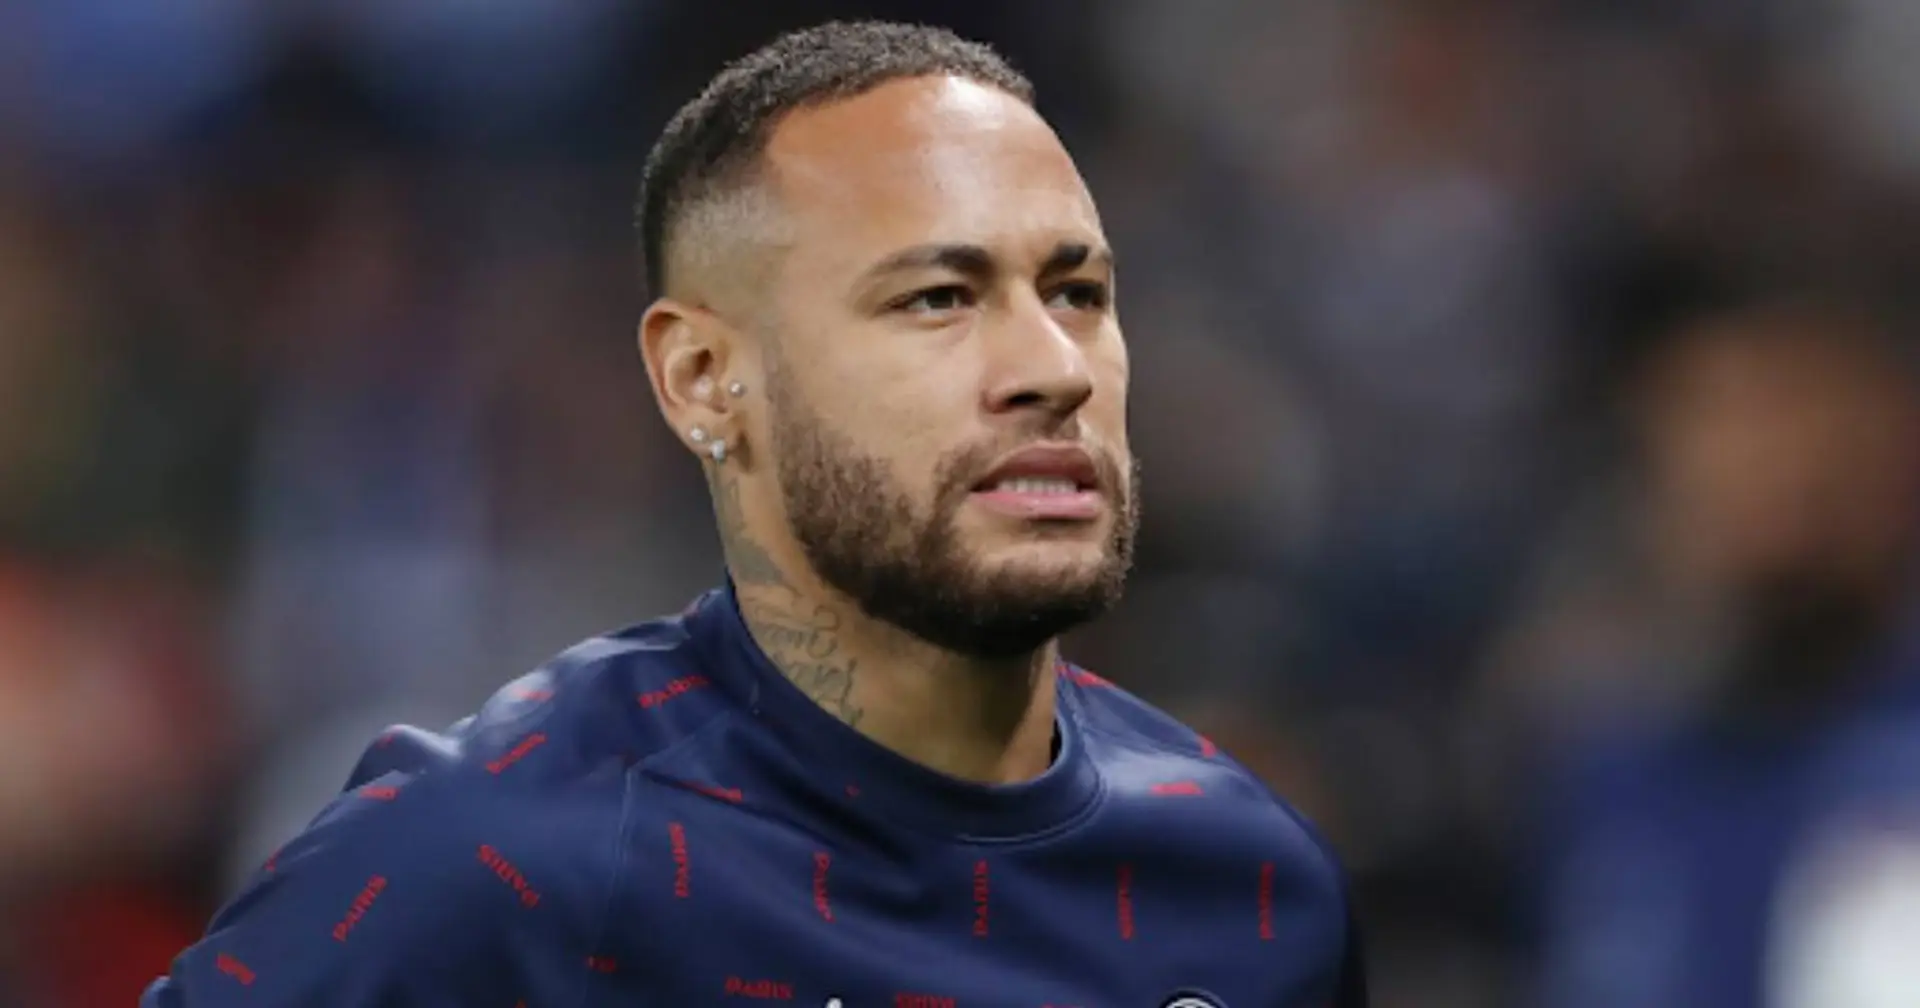 "Er ist ein verwöhntes Gör geworden und kommandiert alle herum": PSG-Legende Cisse übt heftige Kritik an Neymar